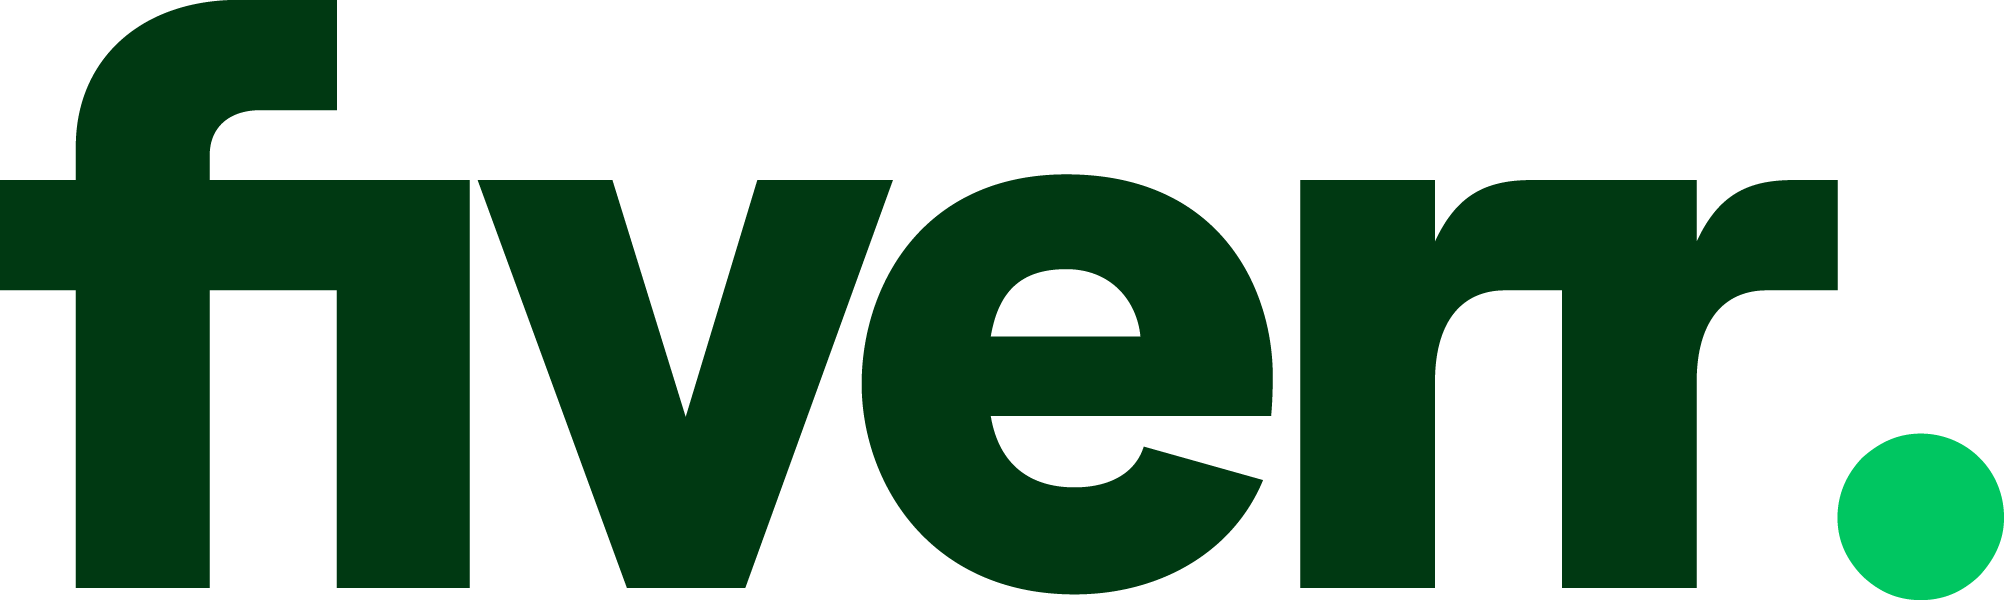 Innovators' Pitch 2023 Logo Fiverr